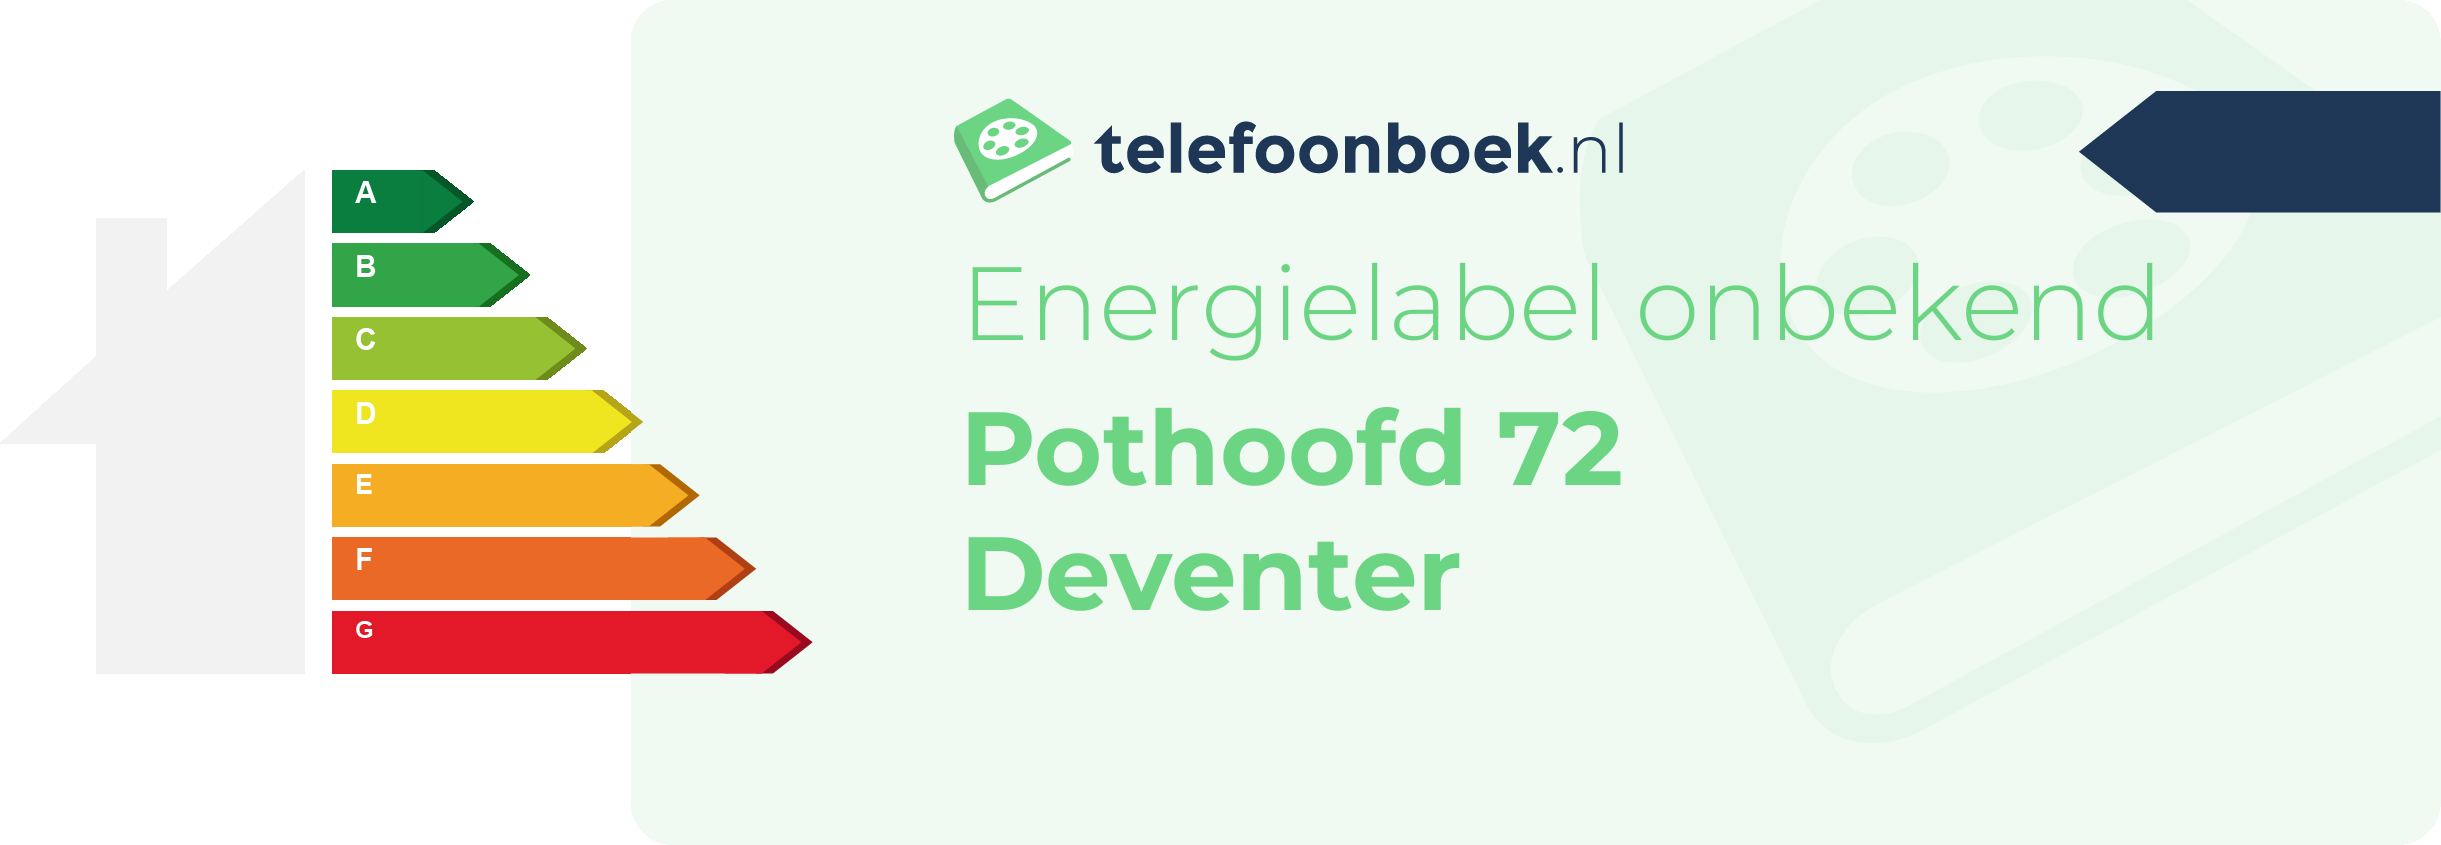 Energielabel Pothoofd 72 Deventer